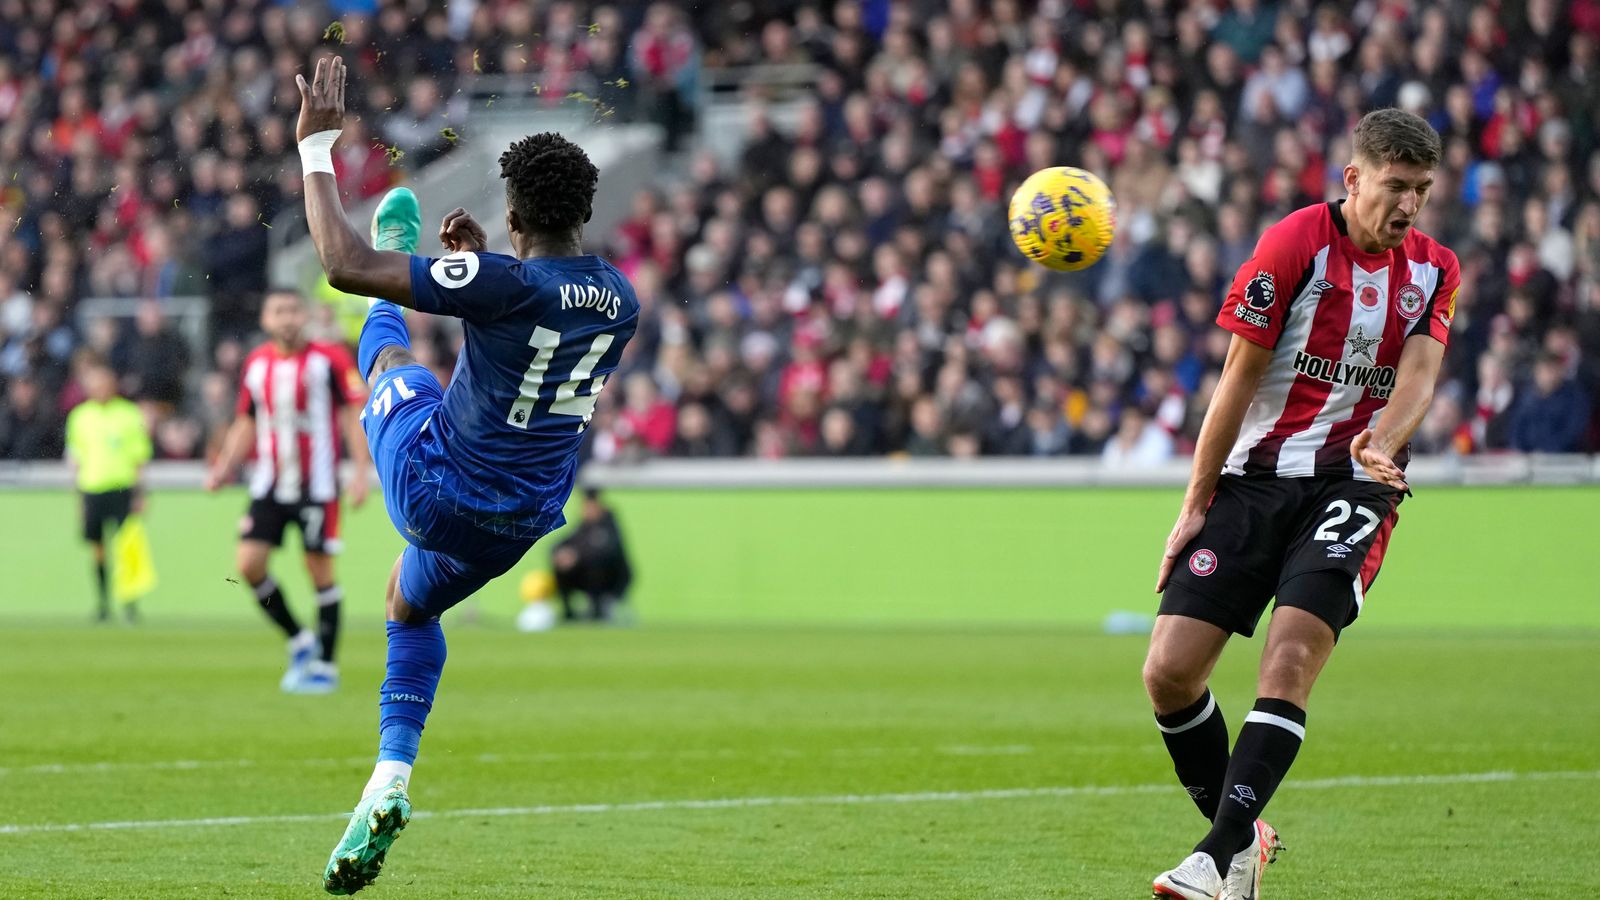 Ghana midfielder Mohammed Kudus scores yet again for West Ham against Brentford